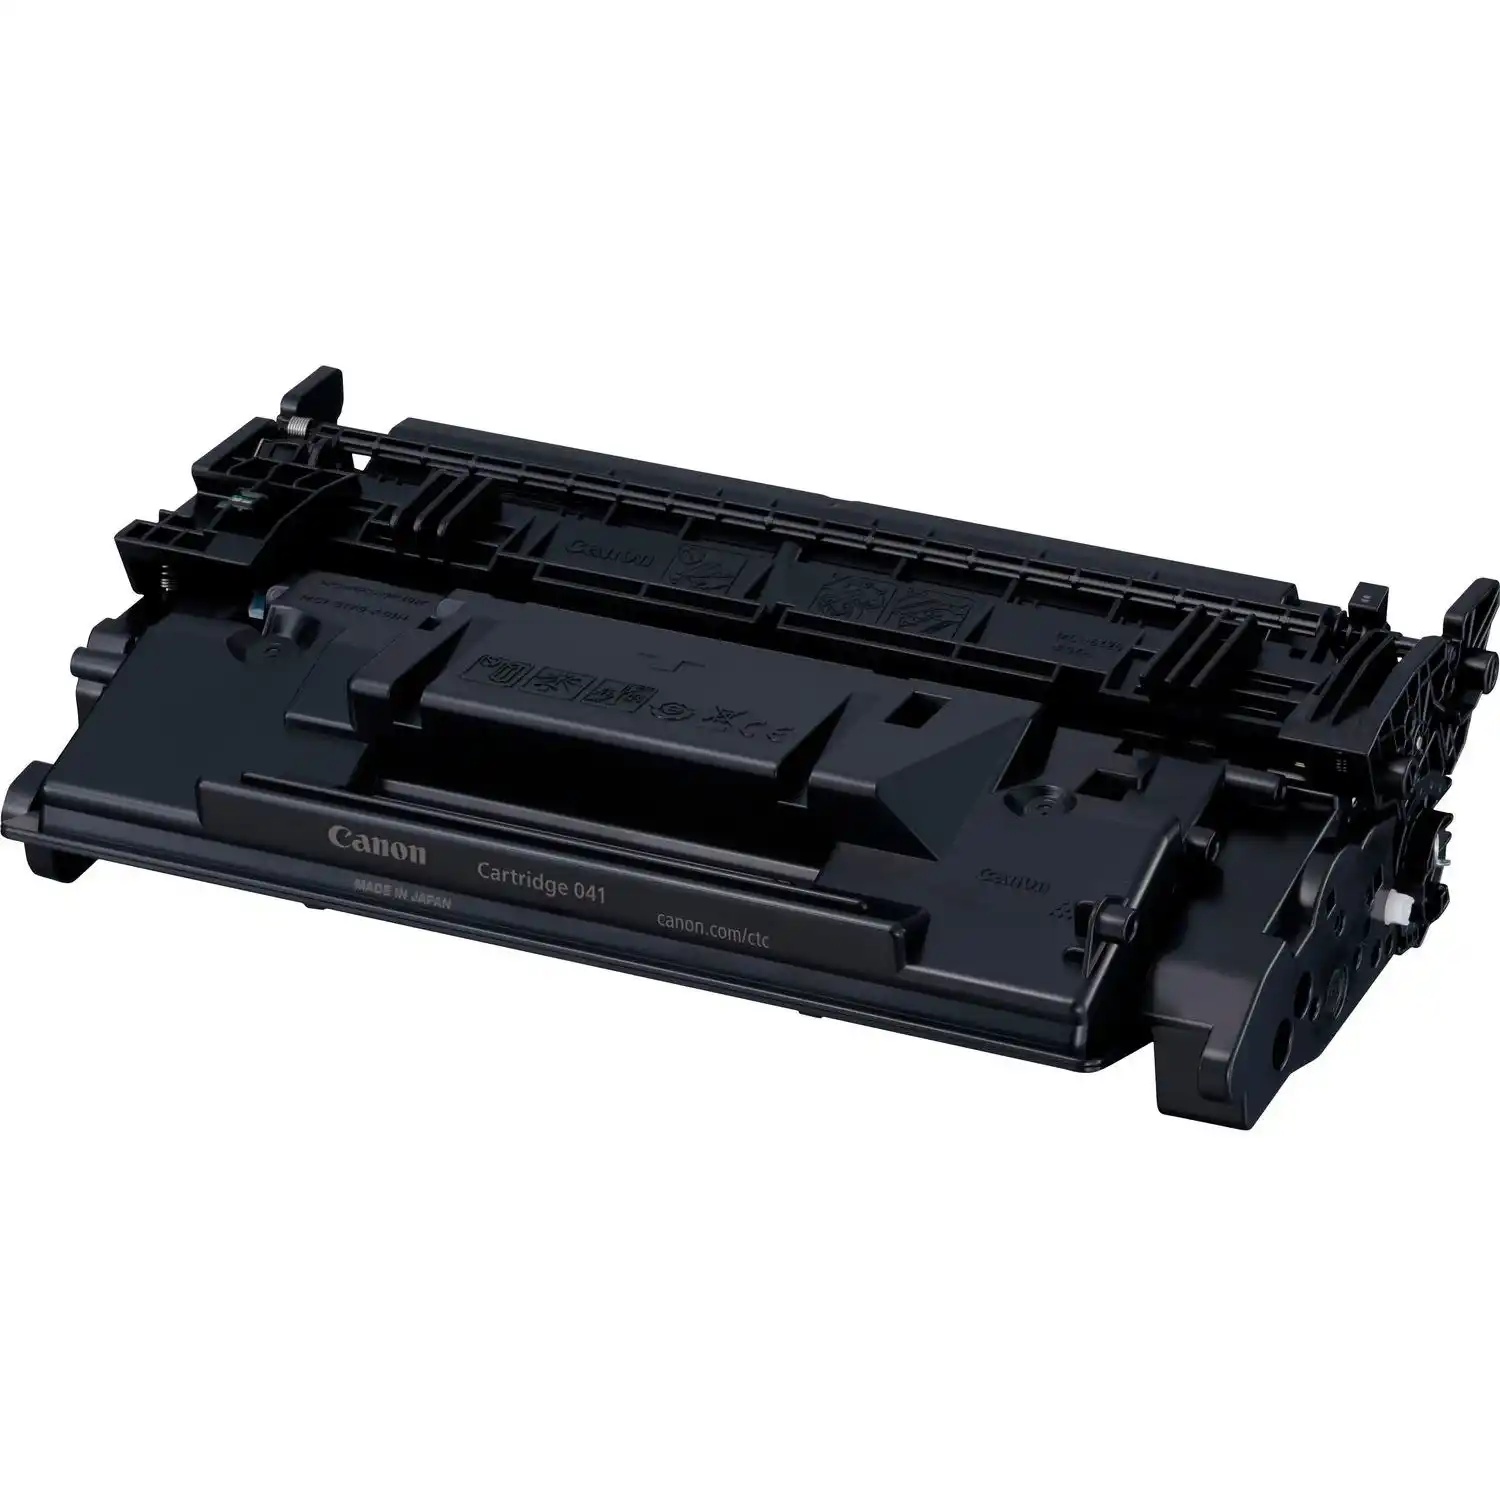 Картридж для лазерного принтера CANON 041 Black (0452C002)